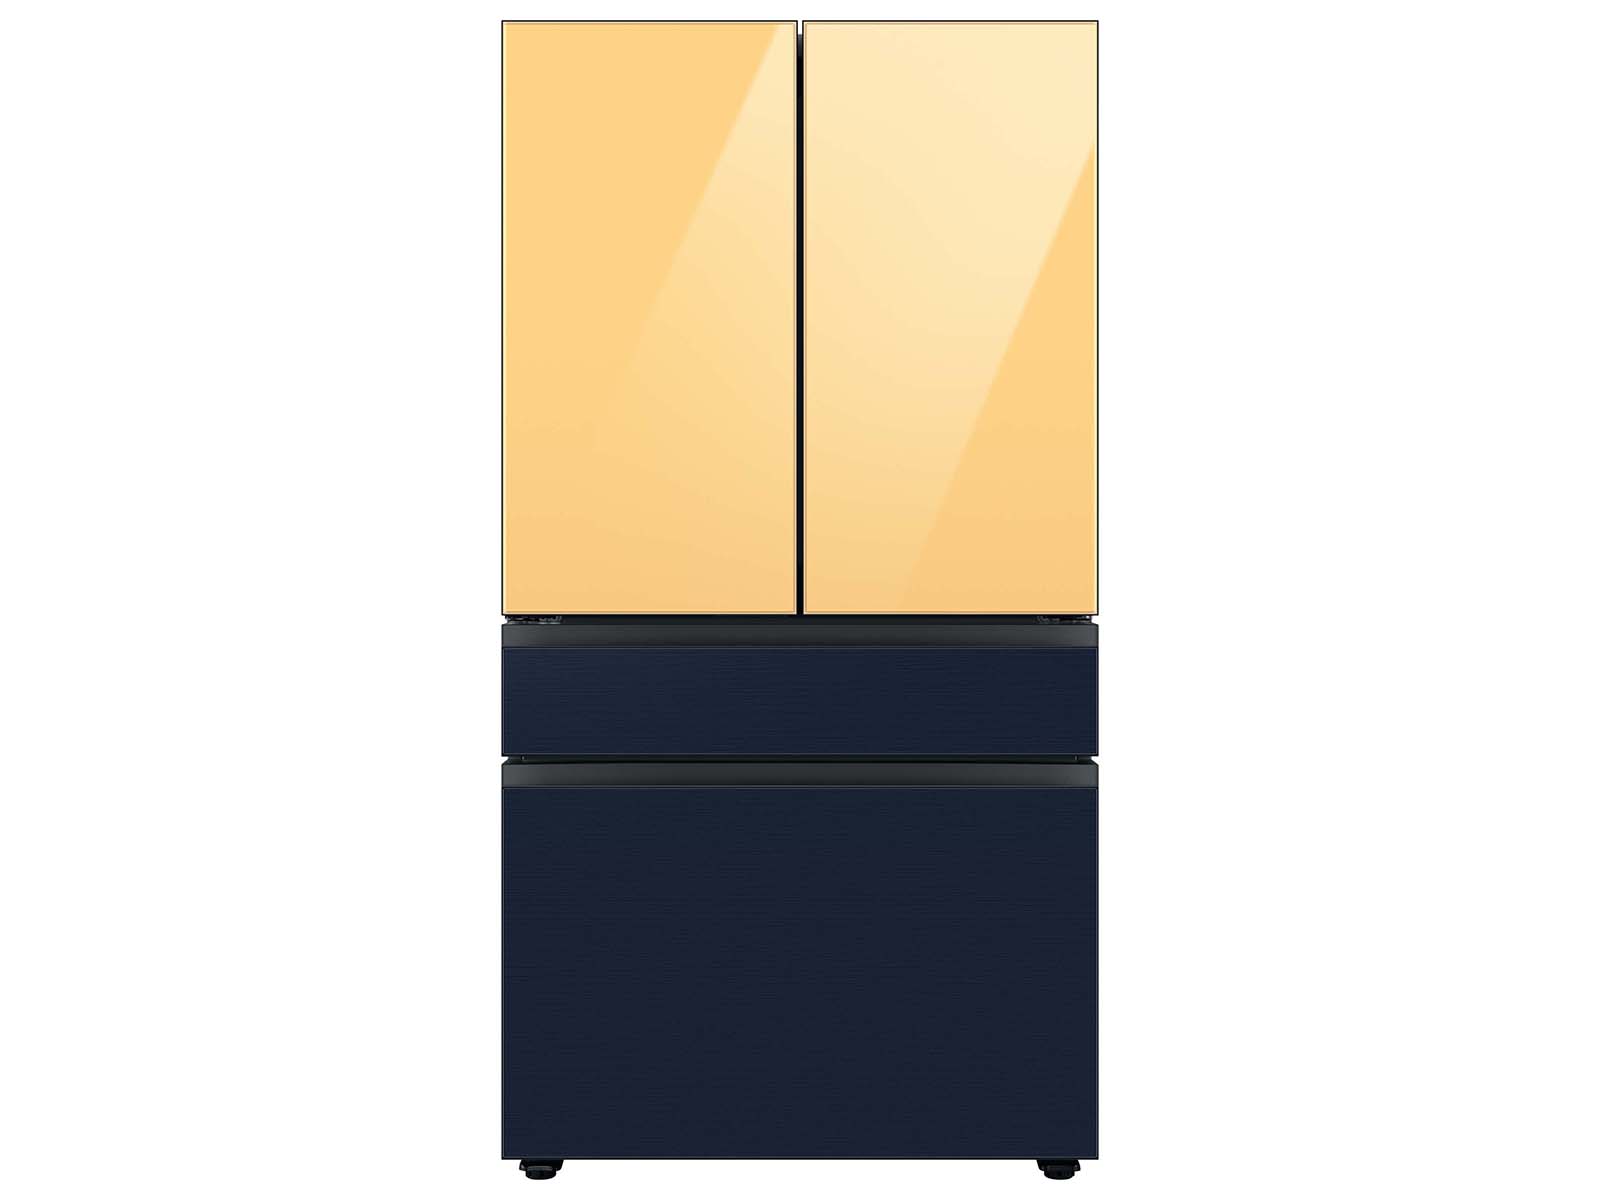 Bespoke 4-Door French Door Refrigerator (23 cu. ft.) with Beverage ...